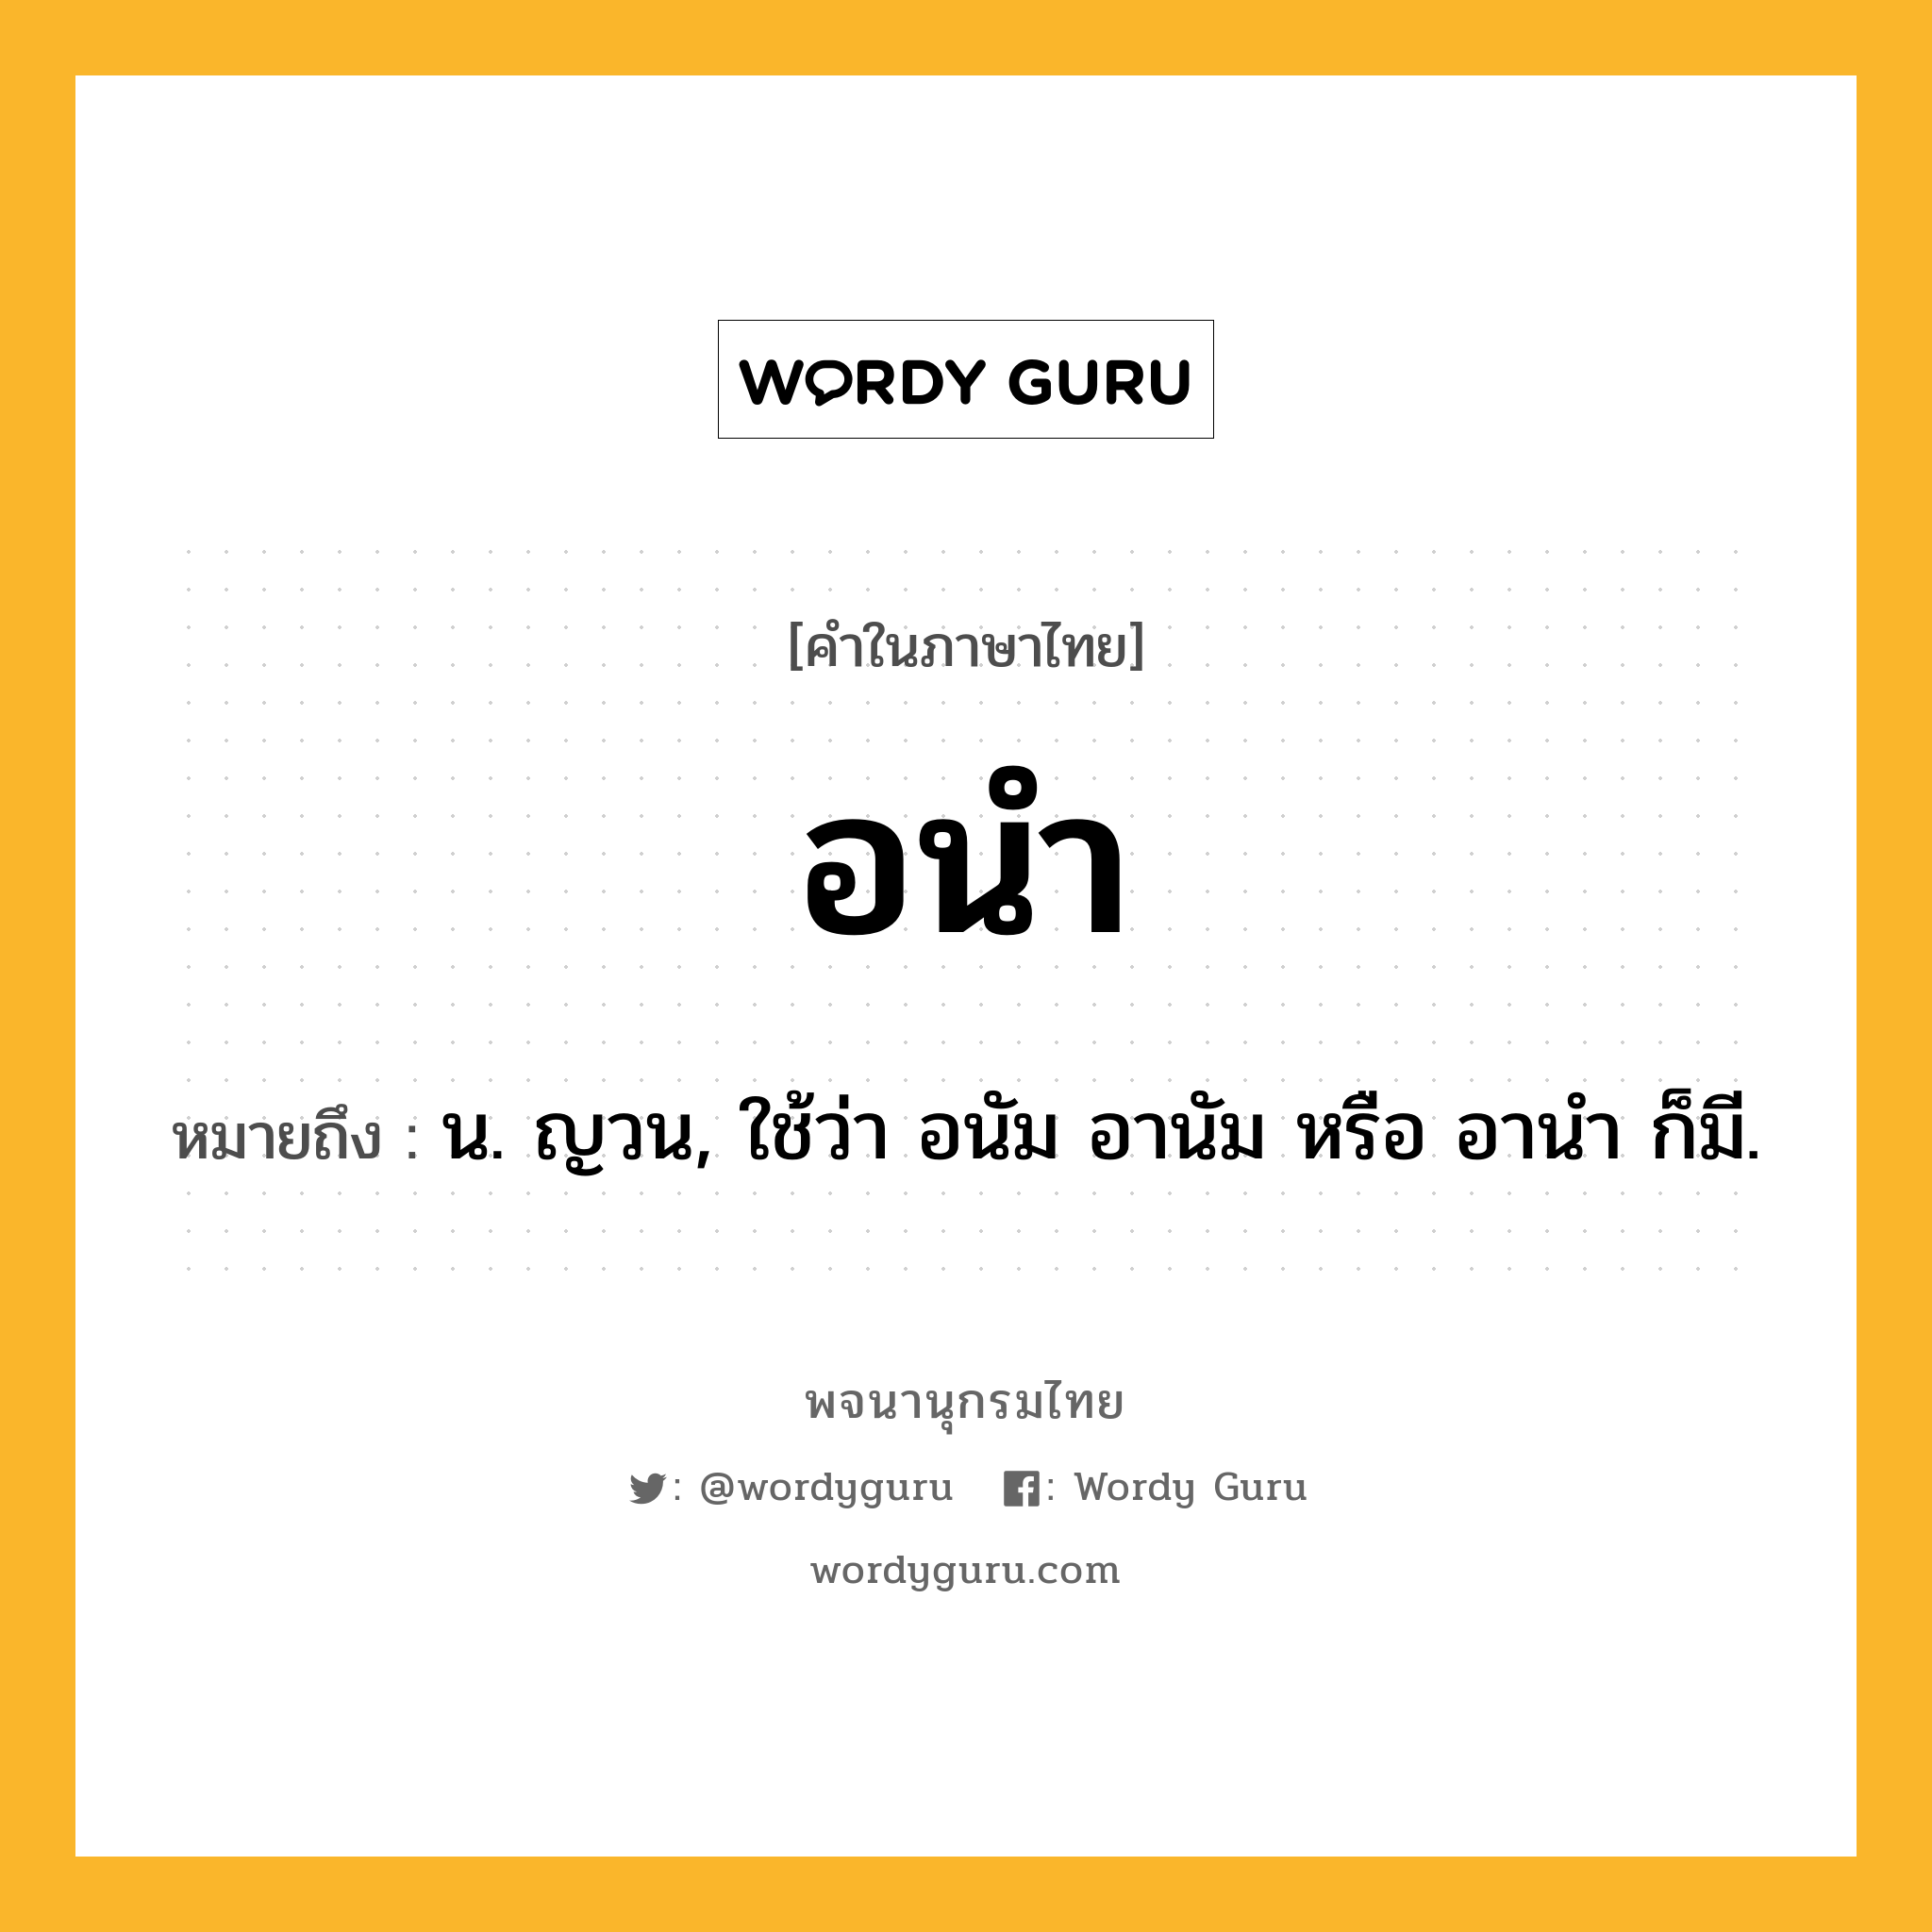 อนำ ความหมาย หมายถึงอะไร?, คำในภาษาไทย อนำ หมายถึง น. ญวน, ใช้ว่า อนัม อานัม หรือ อานํา ก็มี.